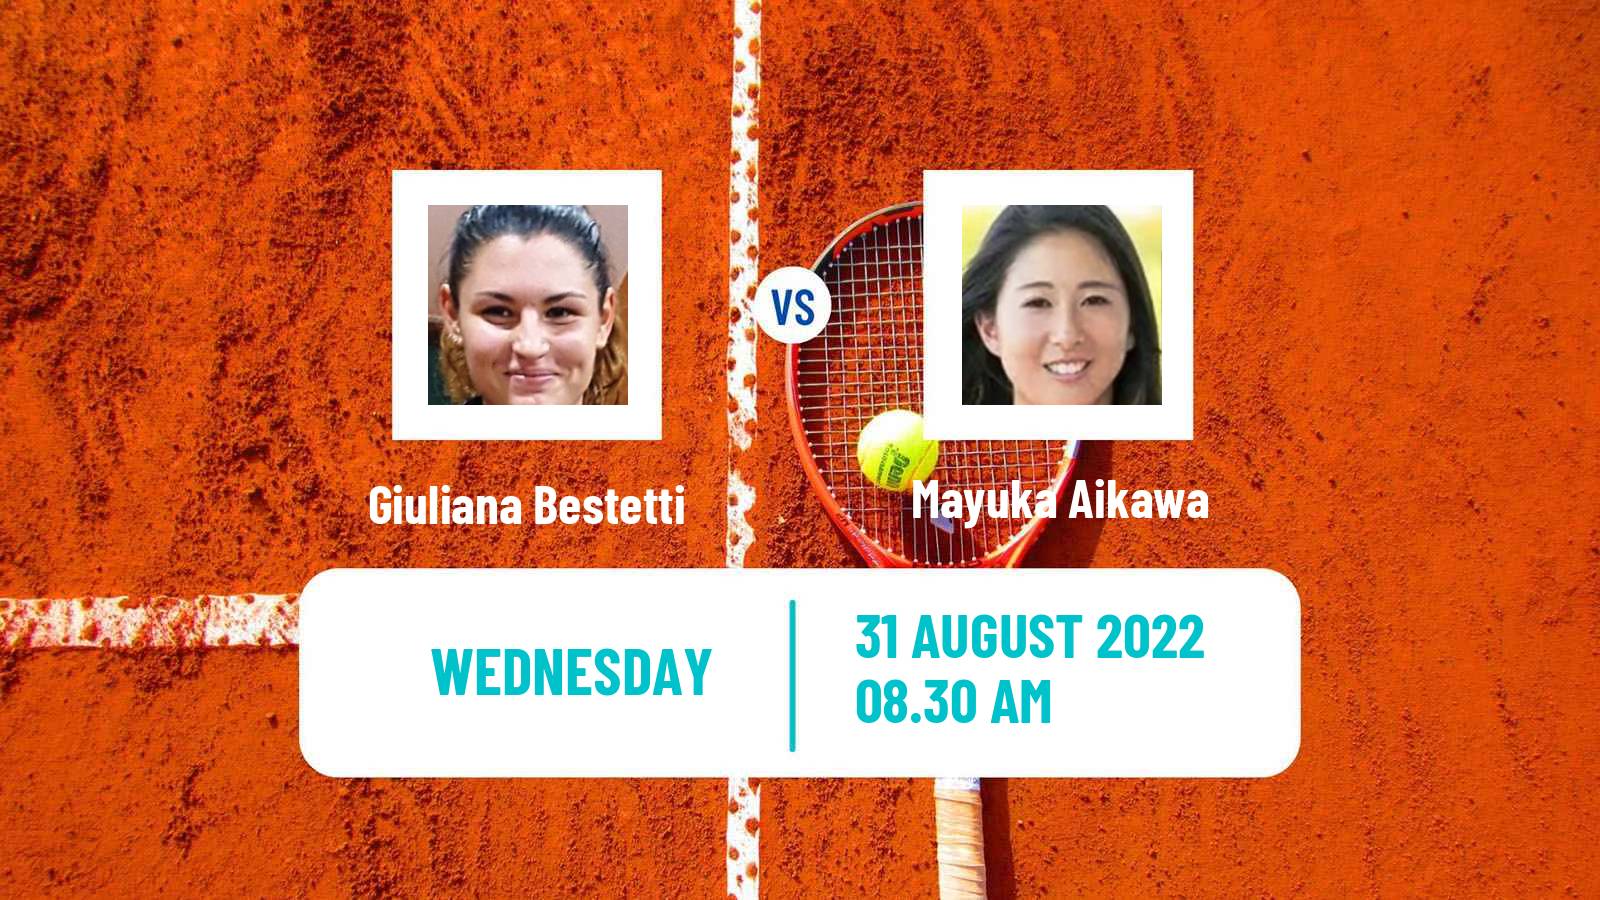 Tennis ITF Tournaments Giuliana Bestetti - Mayuka Aikawa